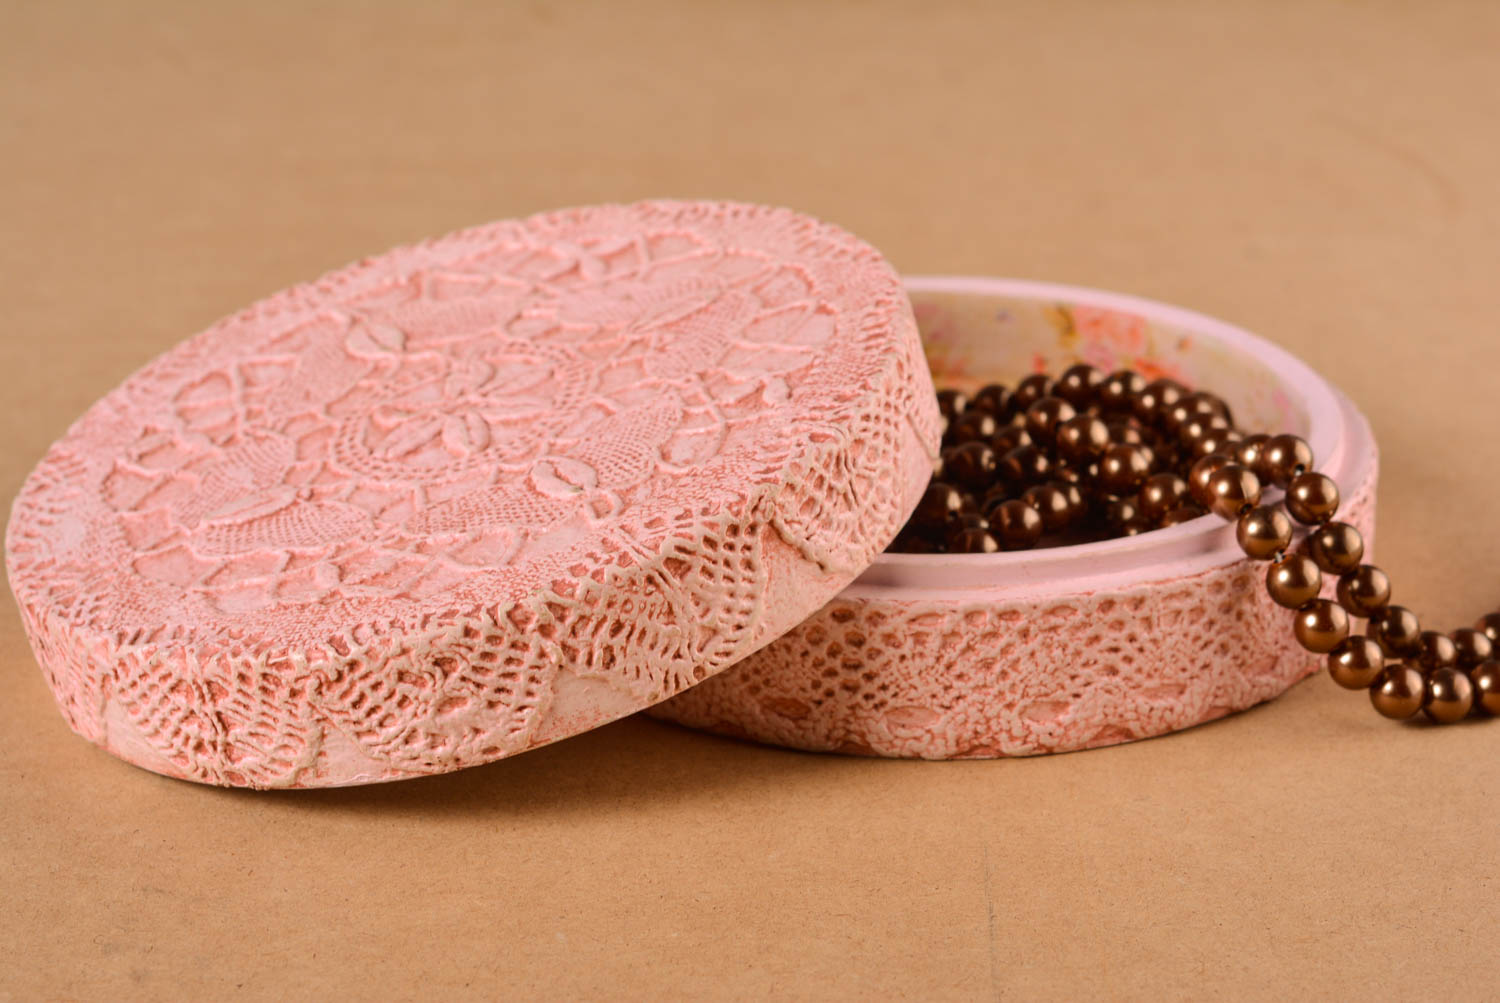 Шкатулка для украшений handmade винтажная шкатулка розовая подарок женщине фото 1